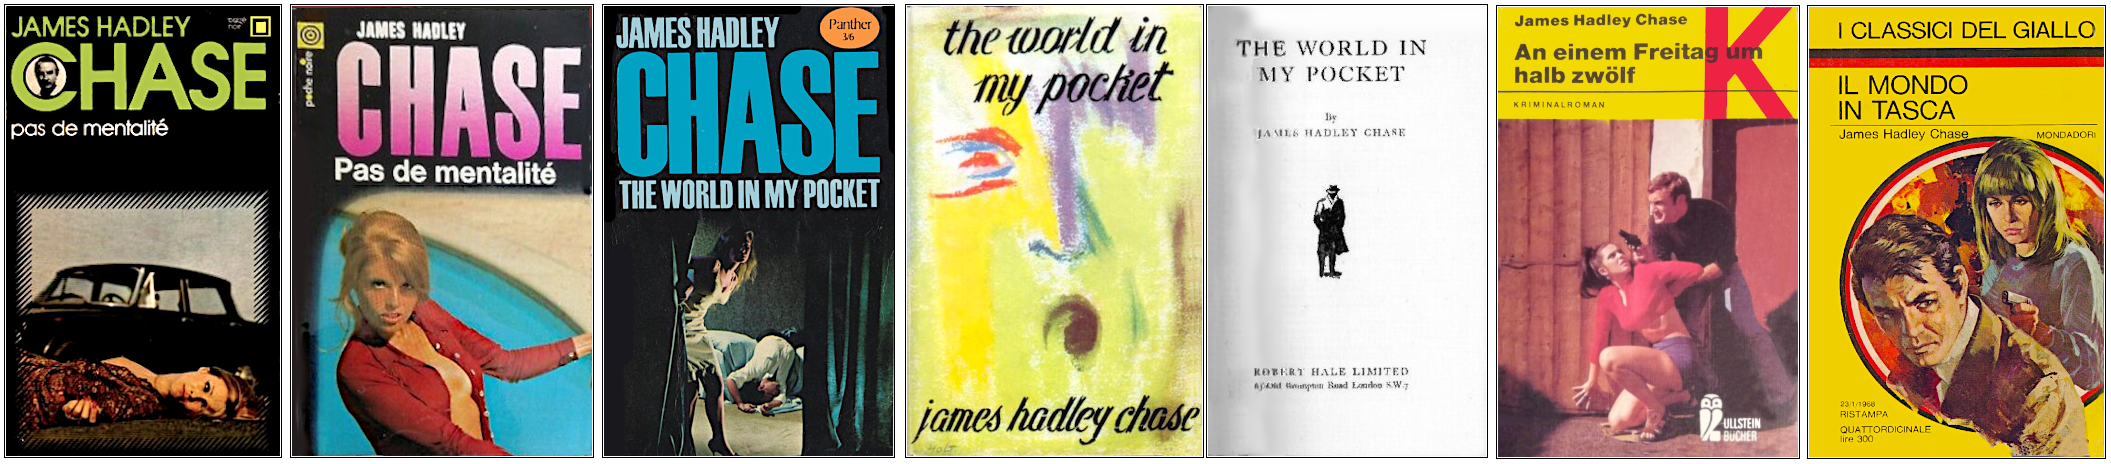 James Hadley Chase - Pas de mentalité (1959) - Éditions Gallimard (Carré noir et Poche noire), Panther, Robert Hale, Ullstein Bücher et Mondadori